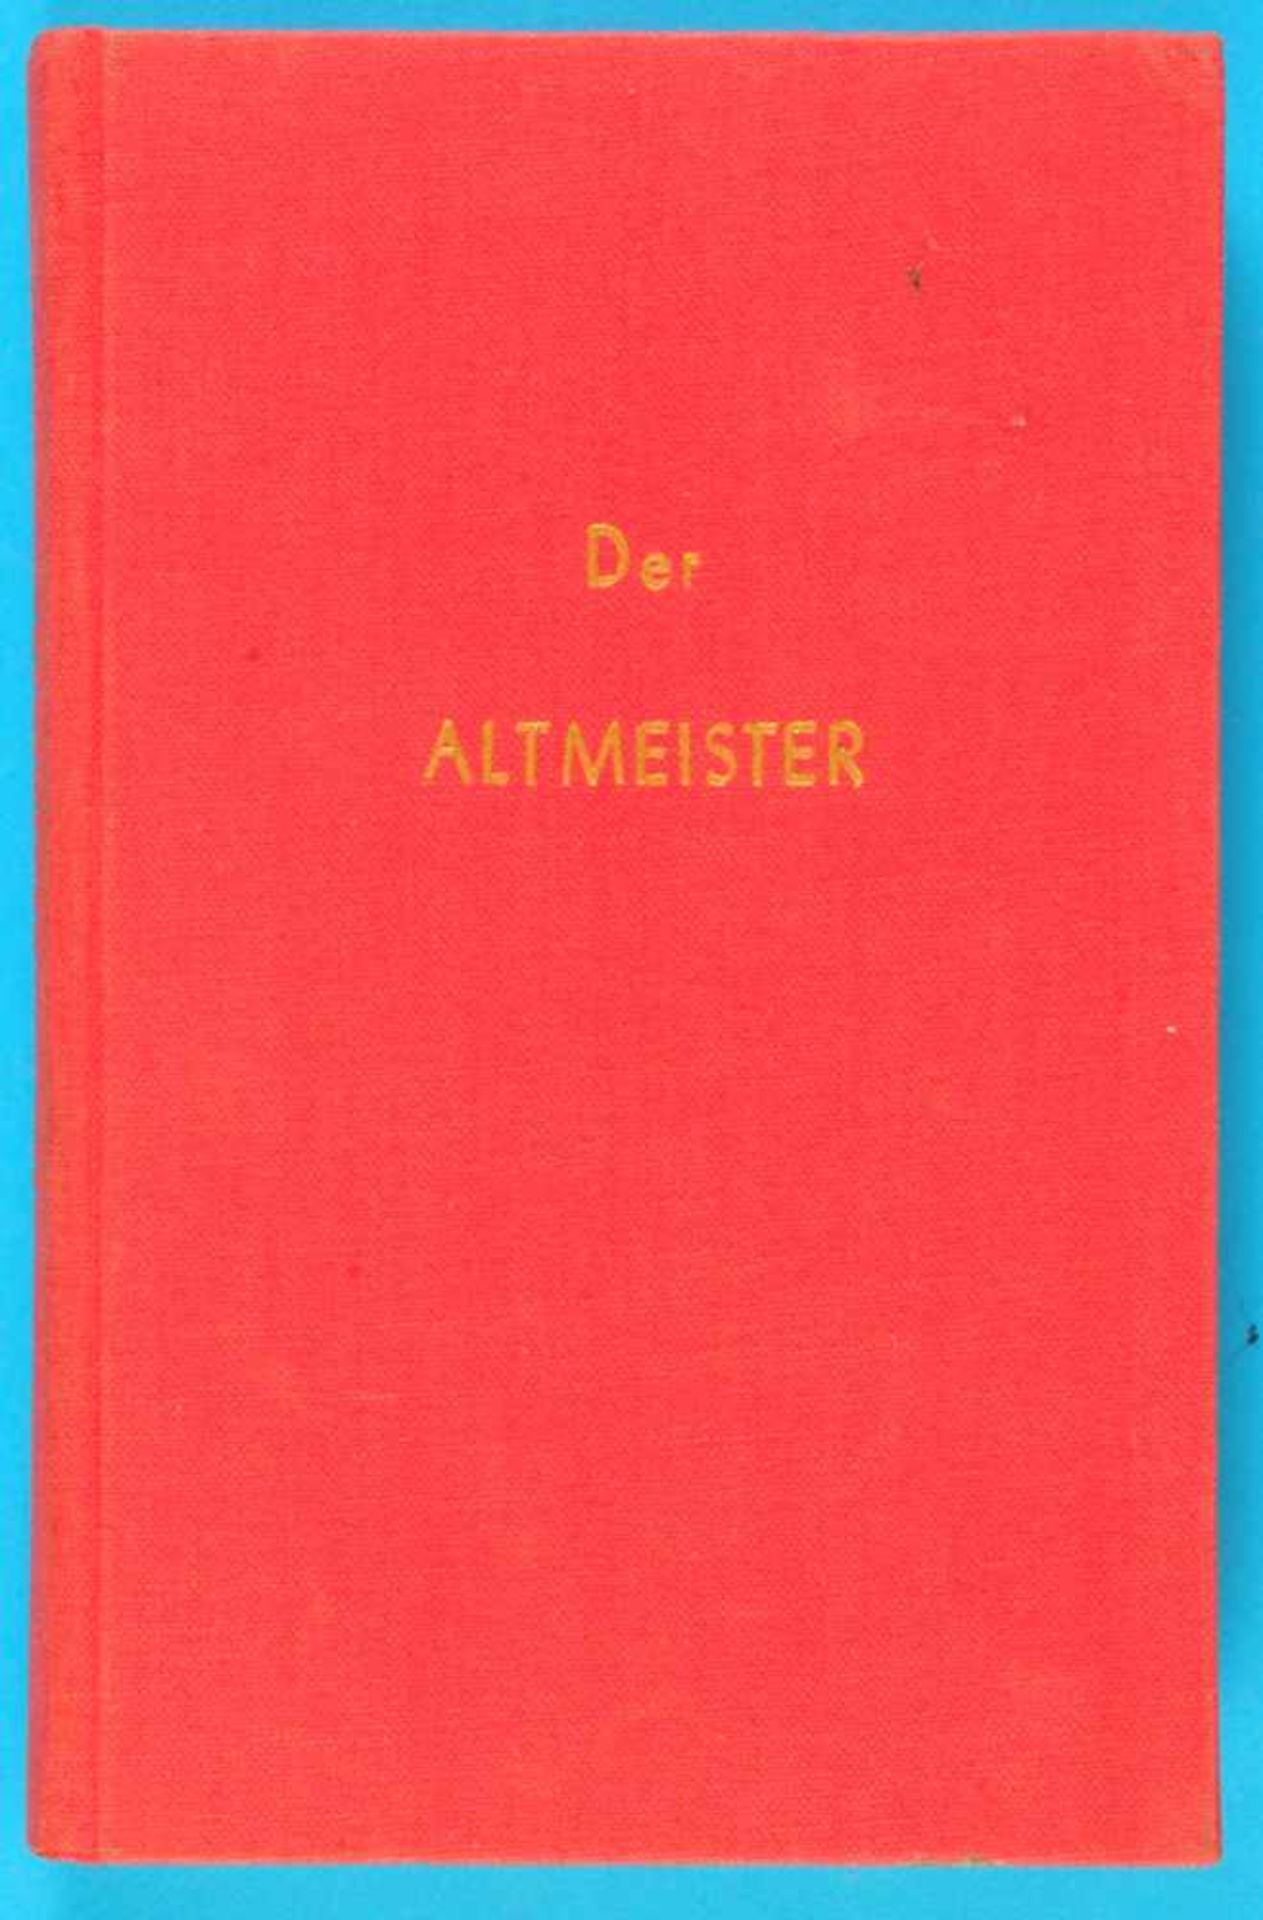 Paul Flieger, Der Altmeister, Erzählung aus dem Leben eines Uhrmachers, 1950, 228 Seiten, fester